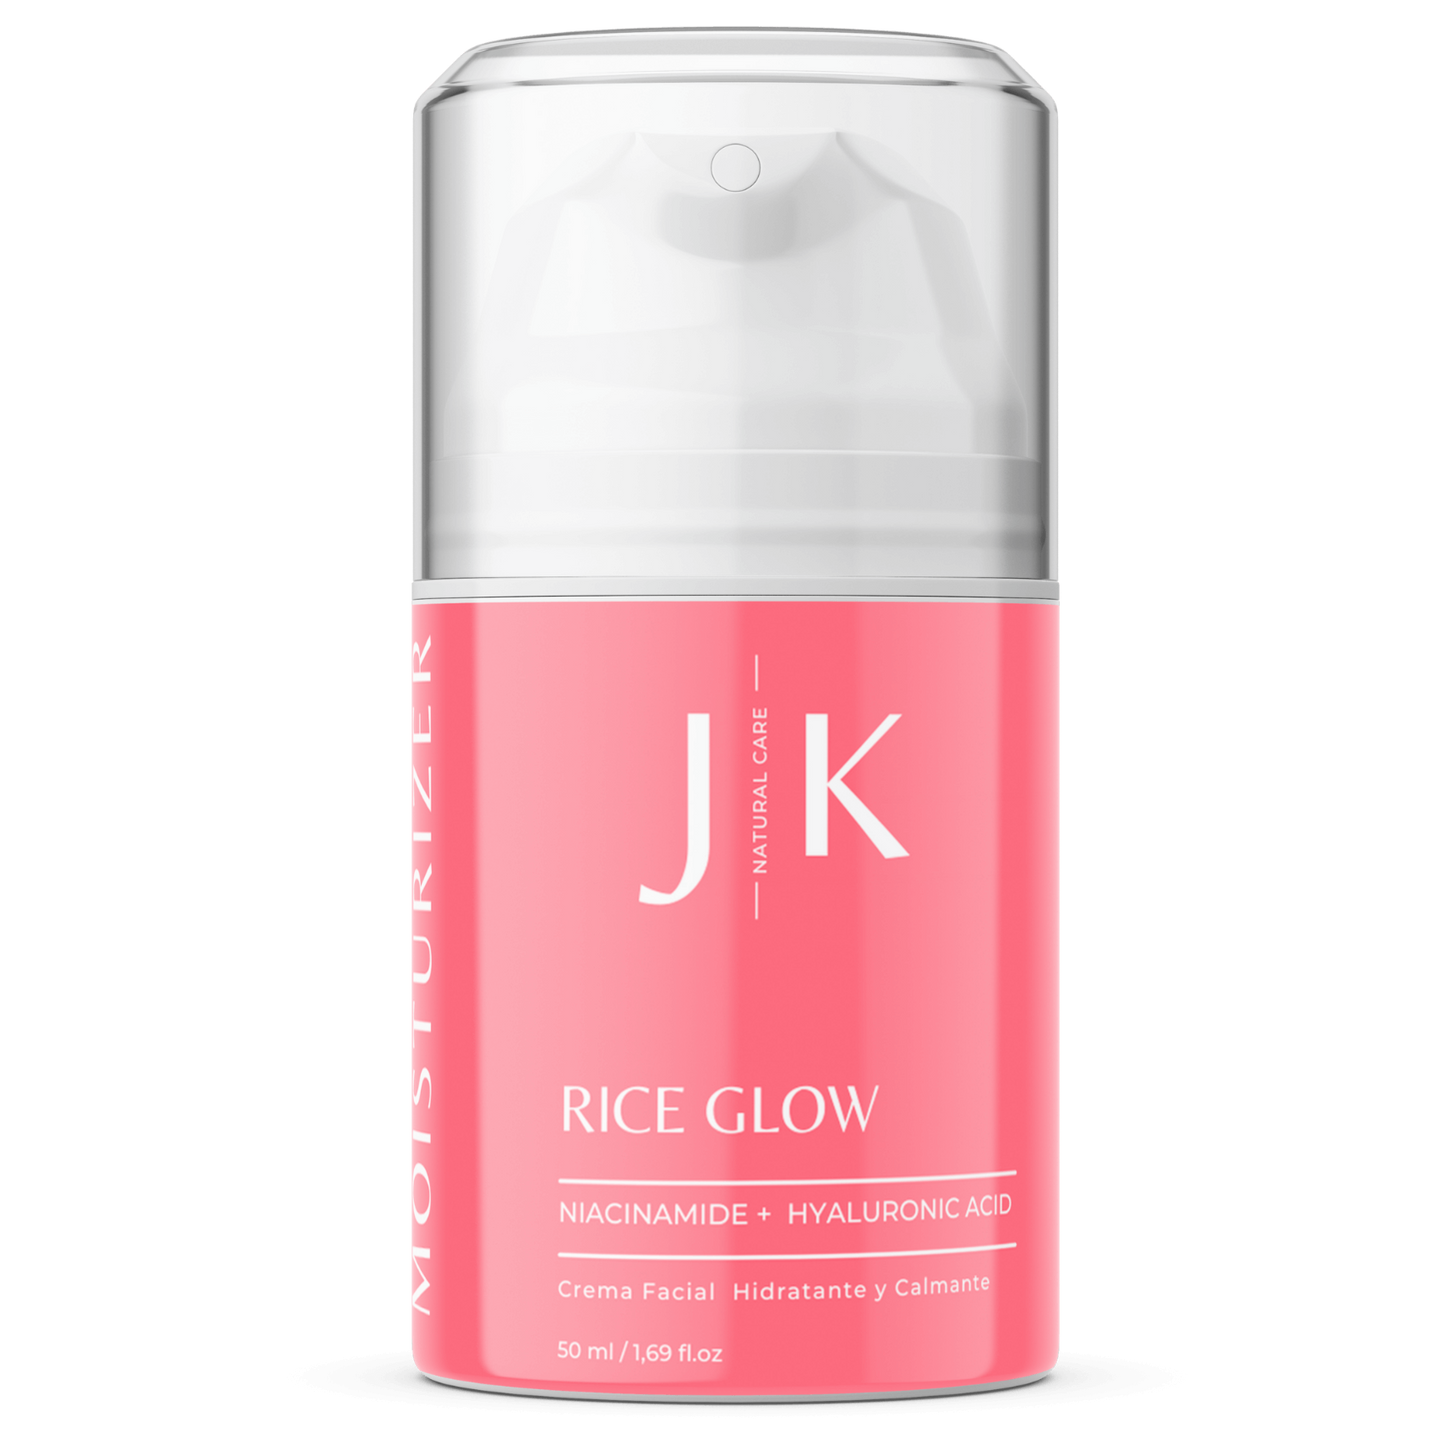 rice glow jk crema facial